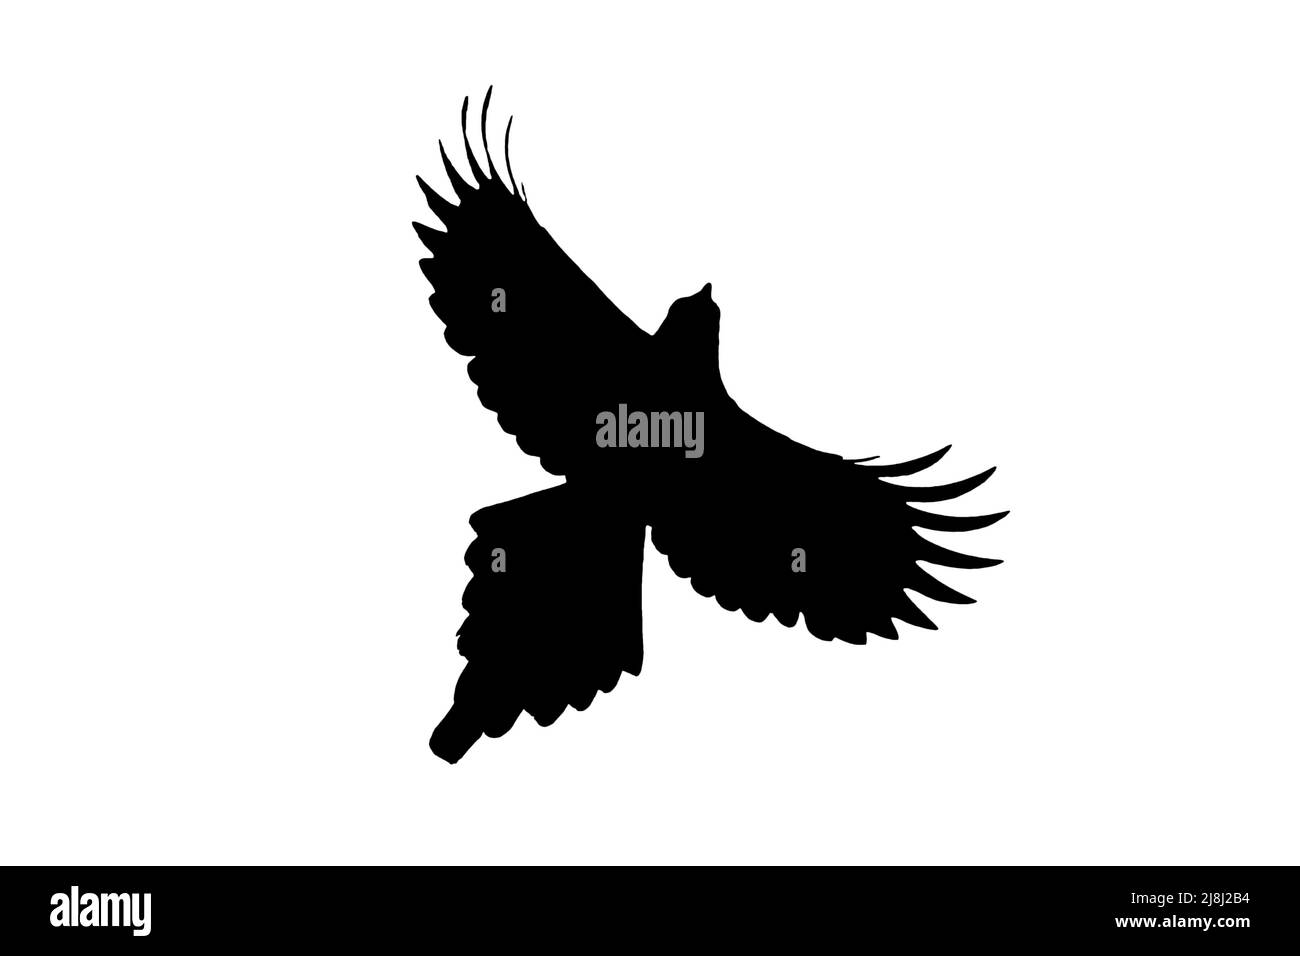 Silueta de la magpie eurasiática / magpie común (Pica pica) en vuelo contorneado sobre fondo blanco para mostrar alas, cabeza y cola formas Foto de stock